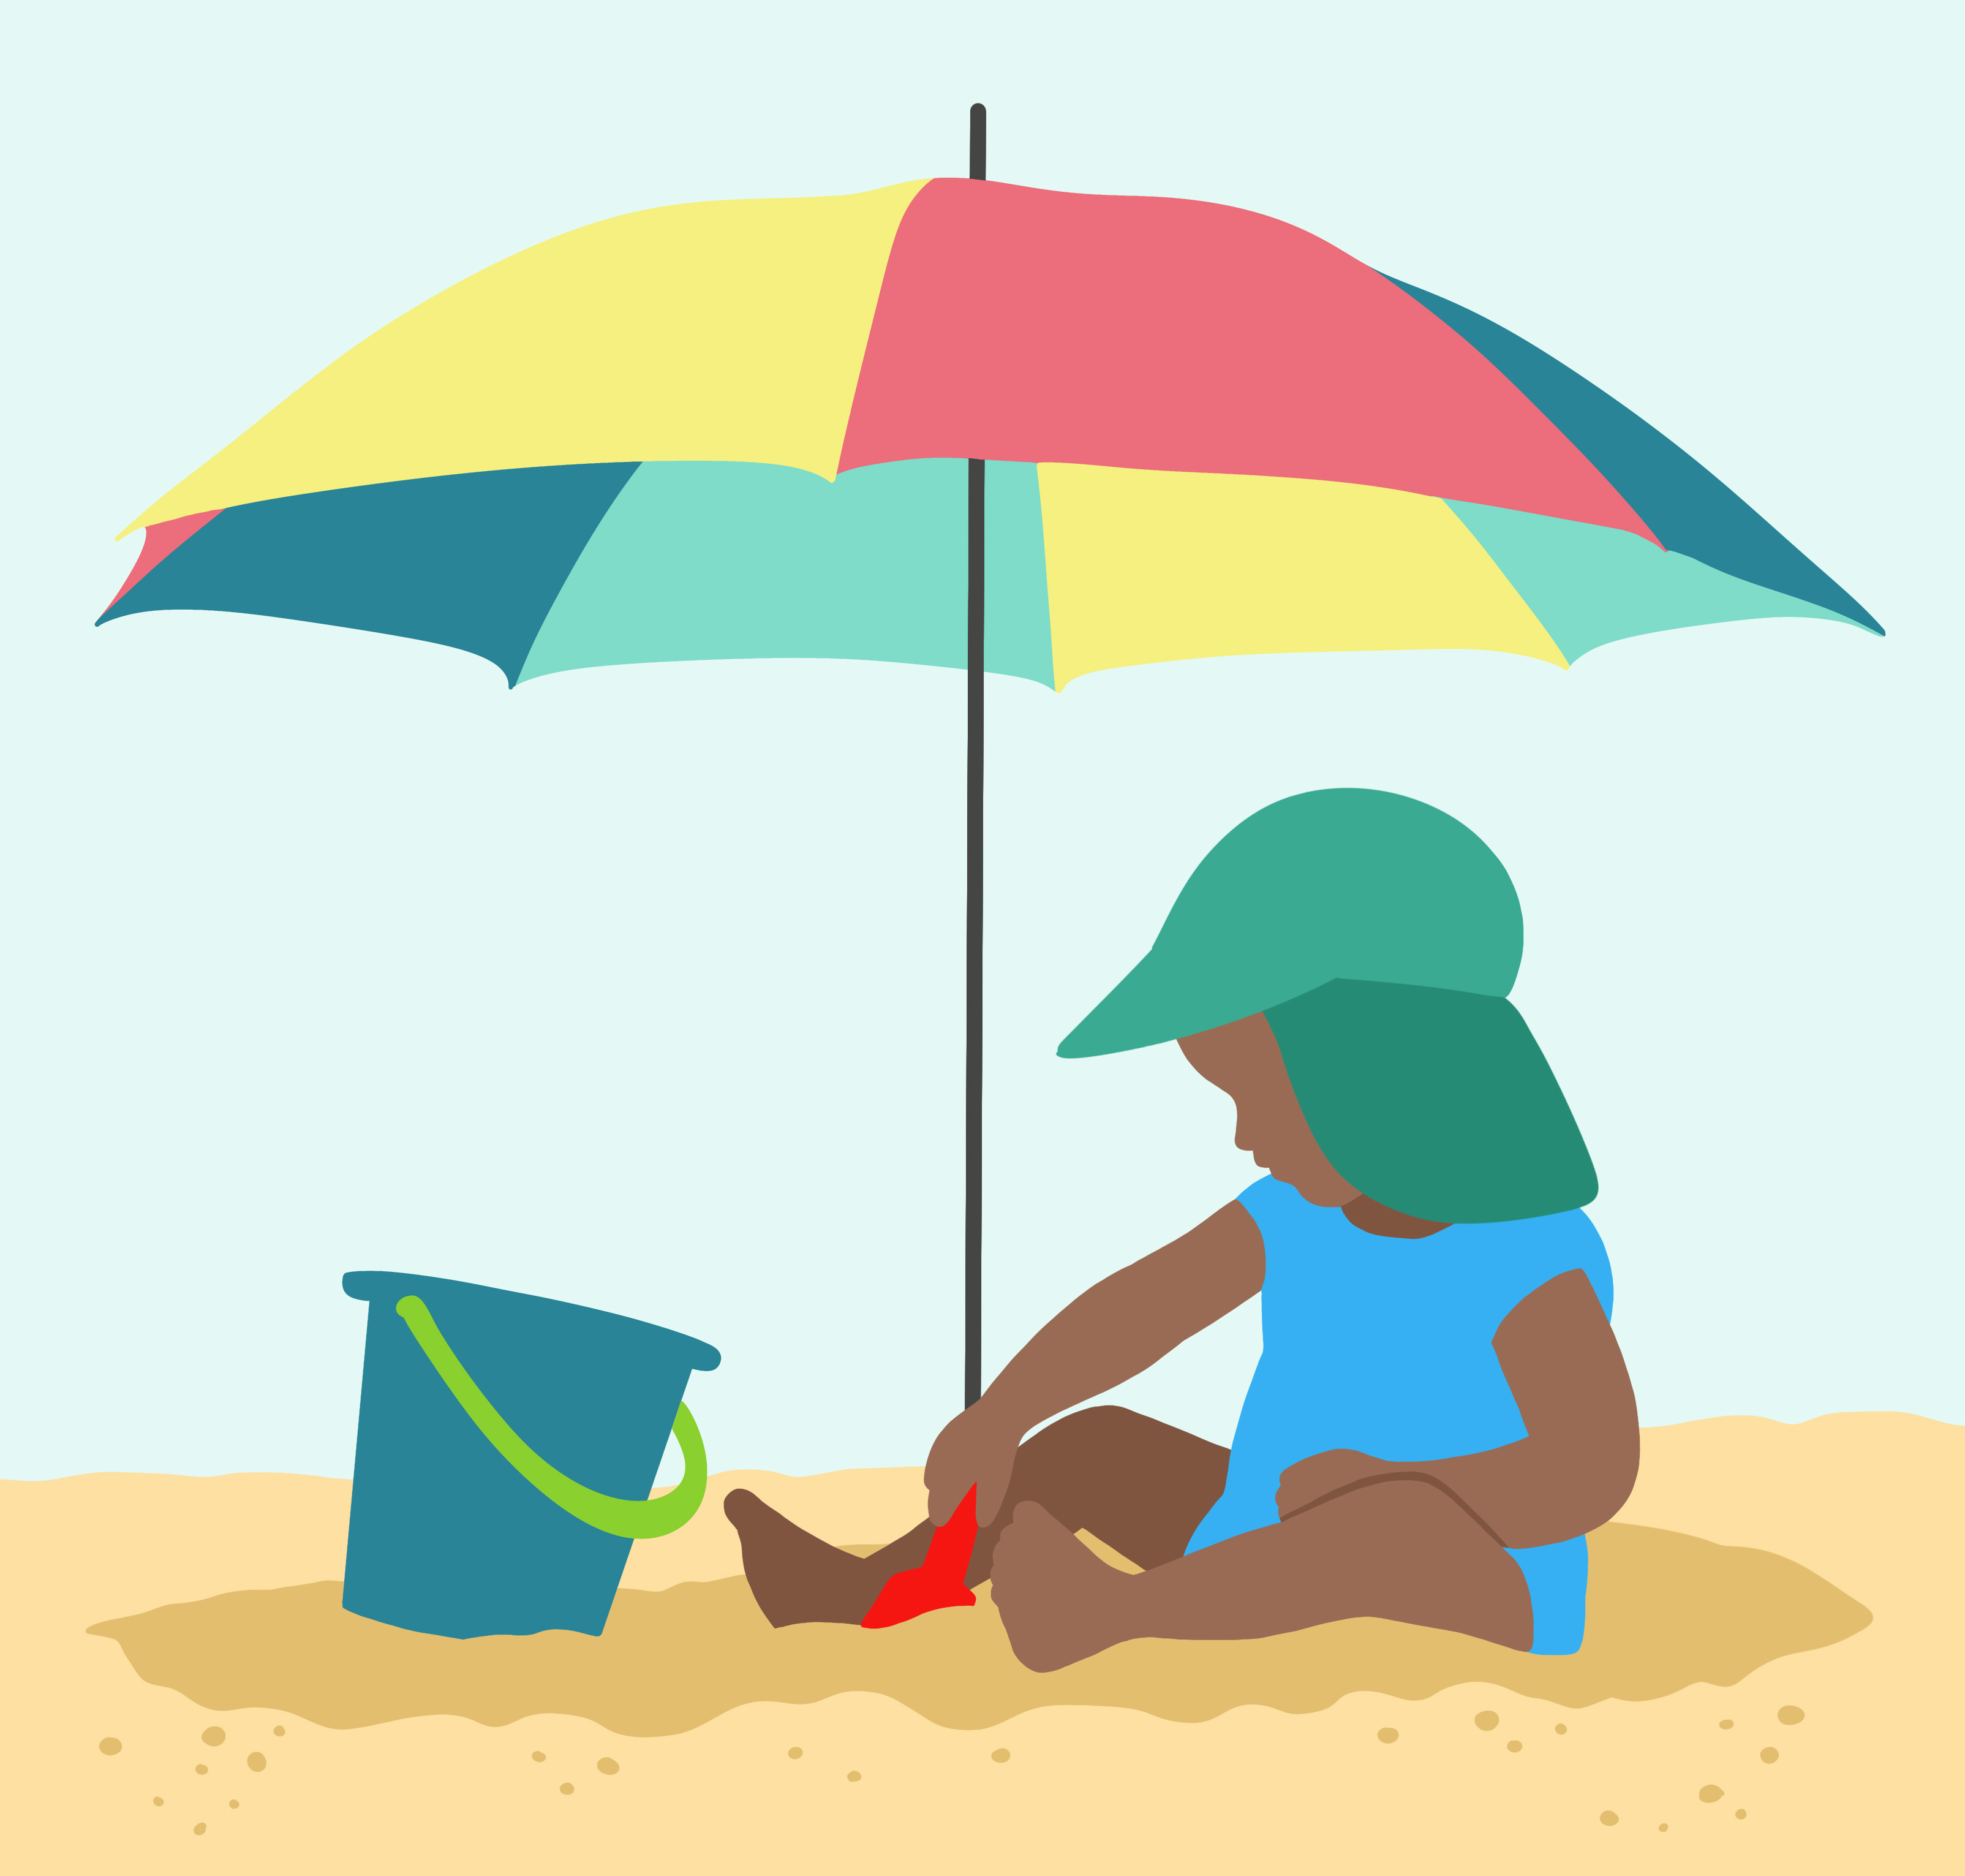 Sommer, Sonne, Sonnenschutz: Kinder richtig vor UV-Strahlen schützen